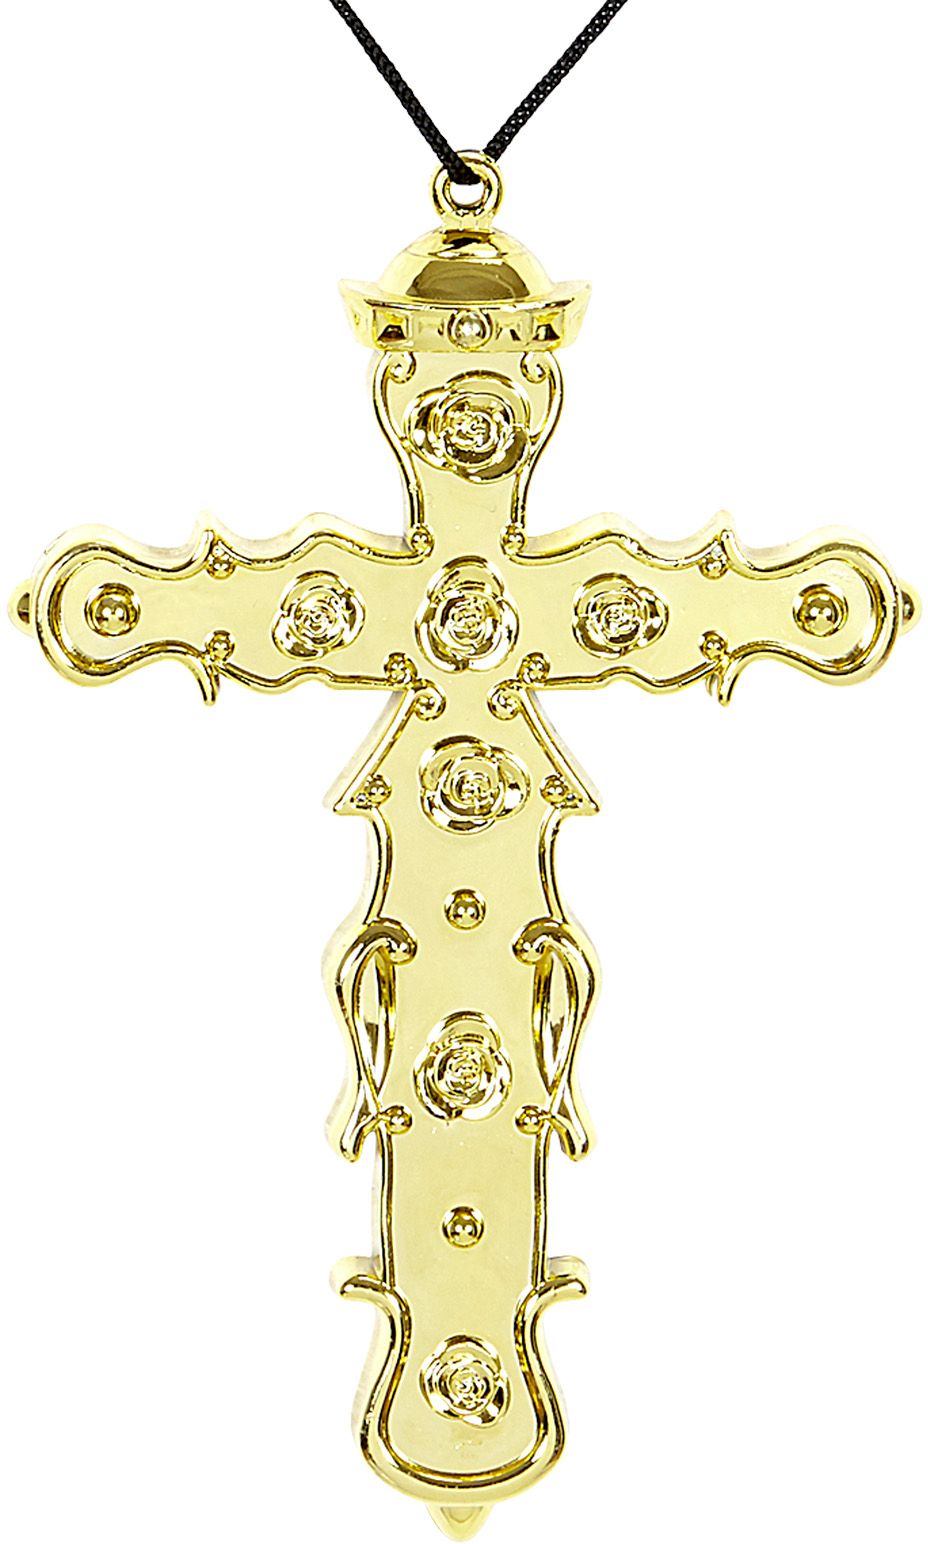 Wonderbaarlijk Gouden kruis ketting | Carnavalskleding.nl YZ-65